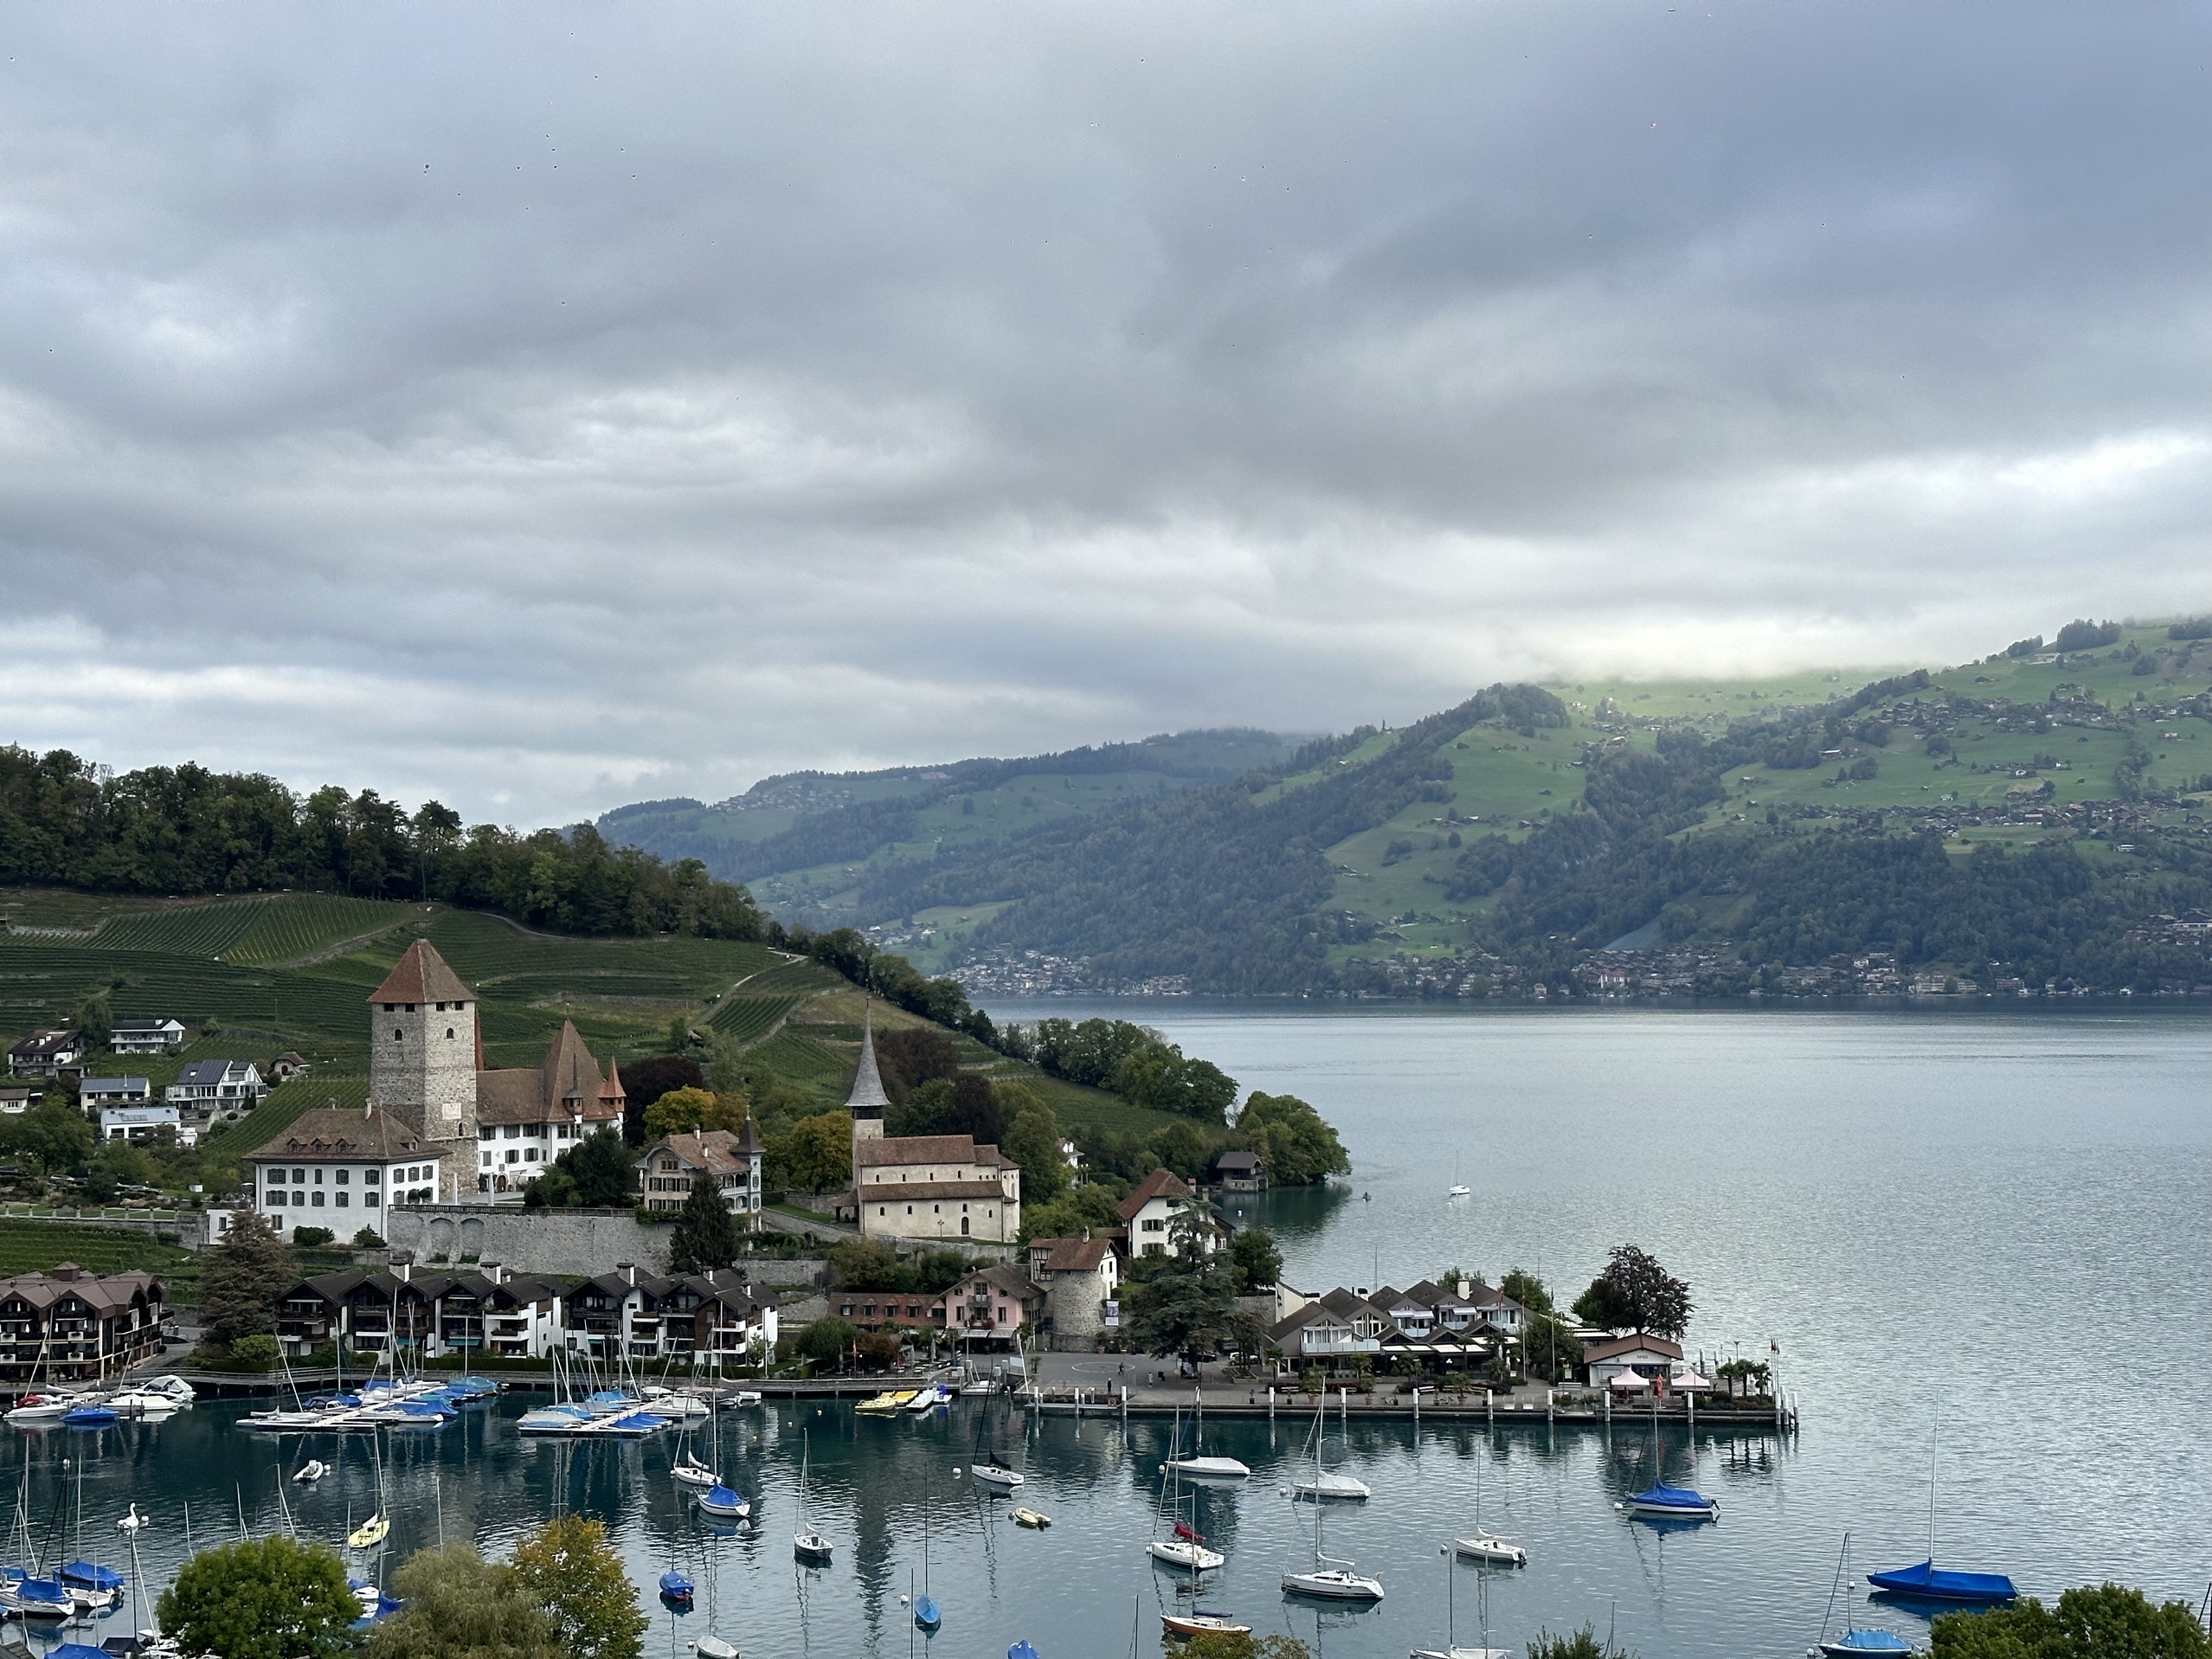 非常哇塞的酒店，可以订湖景最便宜的房型，酒店餐厅在瑞士算还可以的，房间现代化，酒店也有望湖泡池和小无